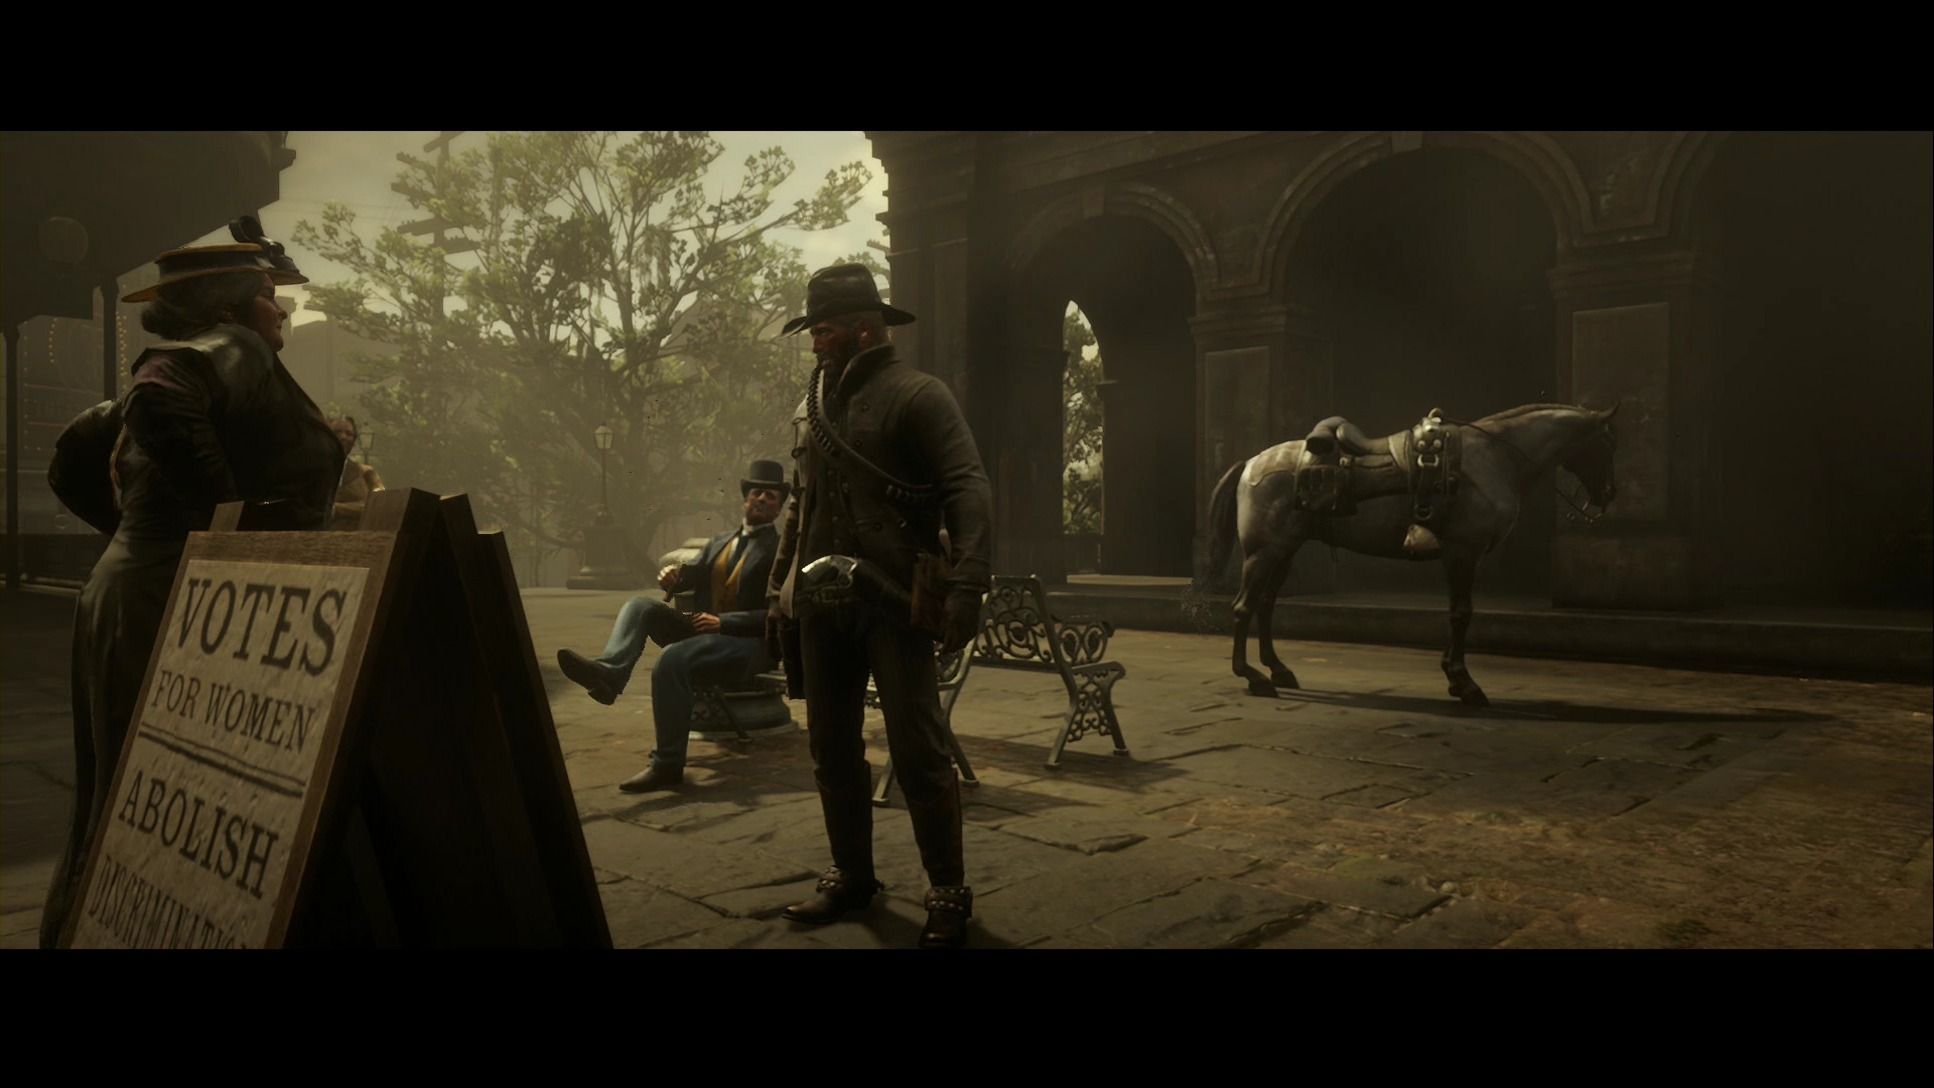 Red Dead Redemption 2 - Encuentros fortuitos: Escenarios de homicidio